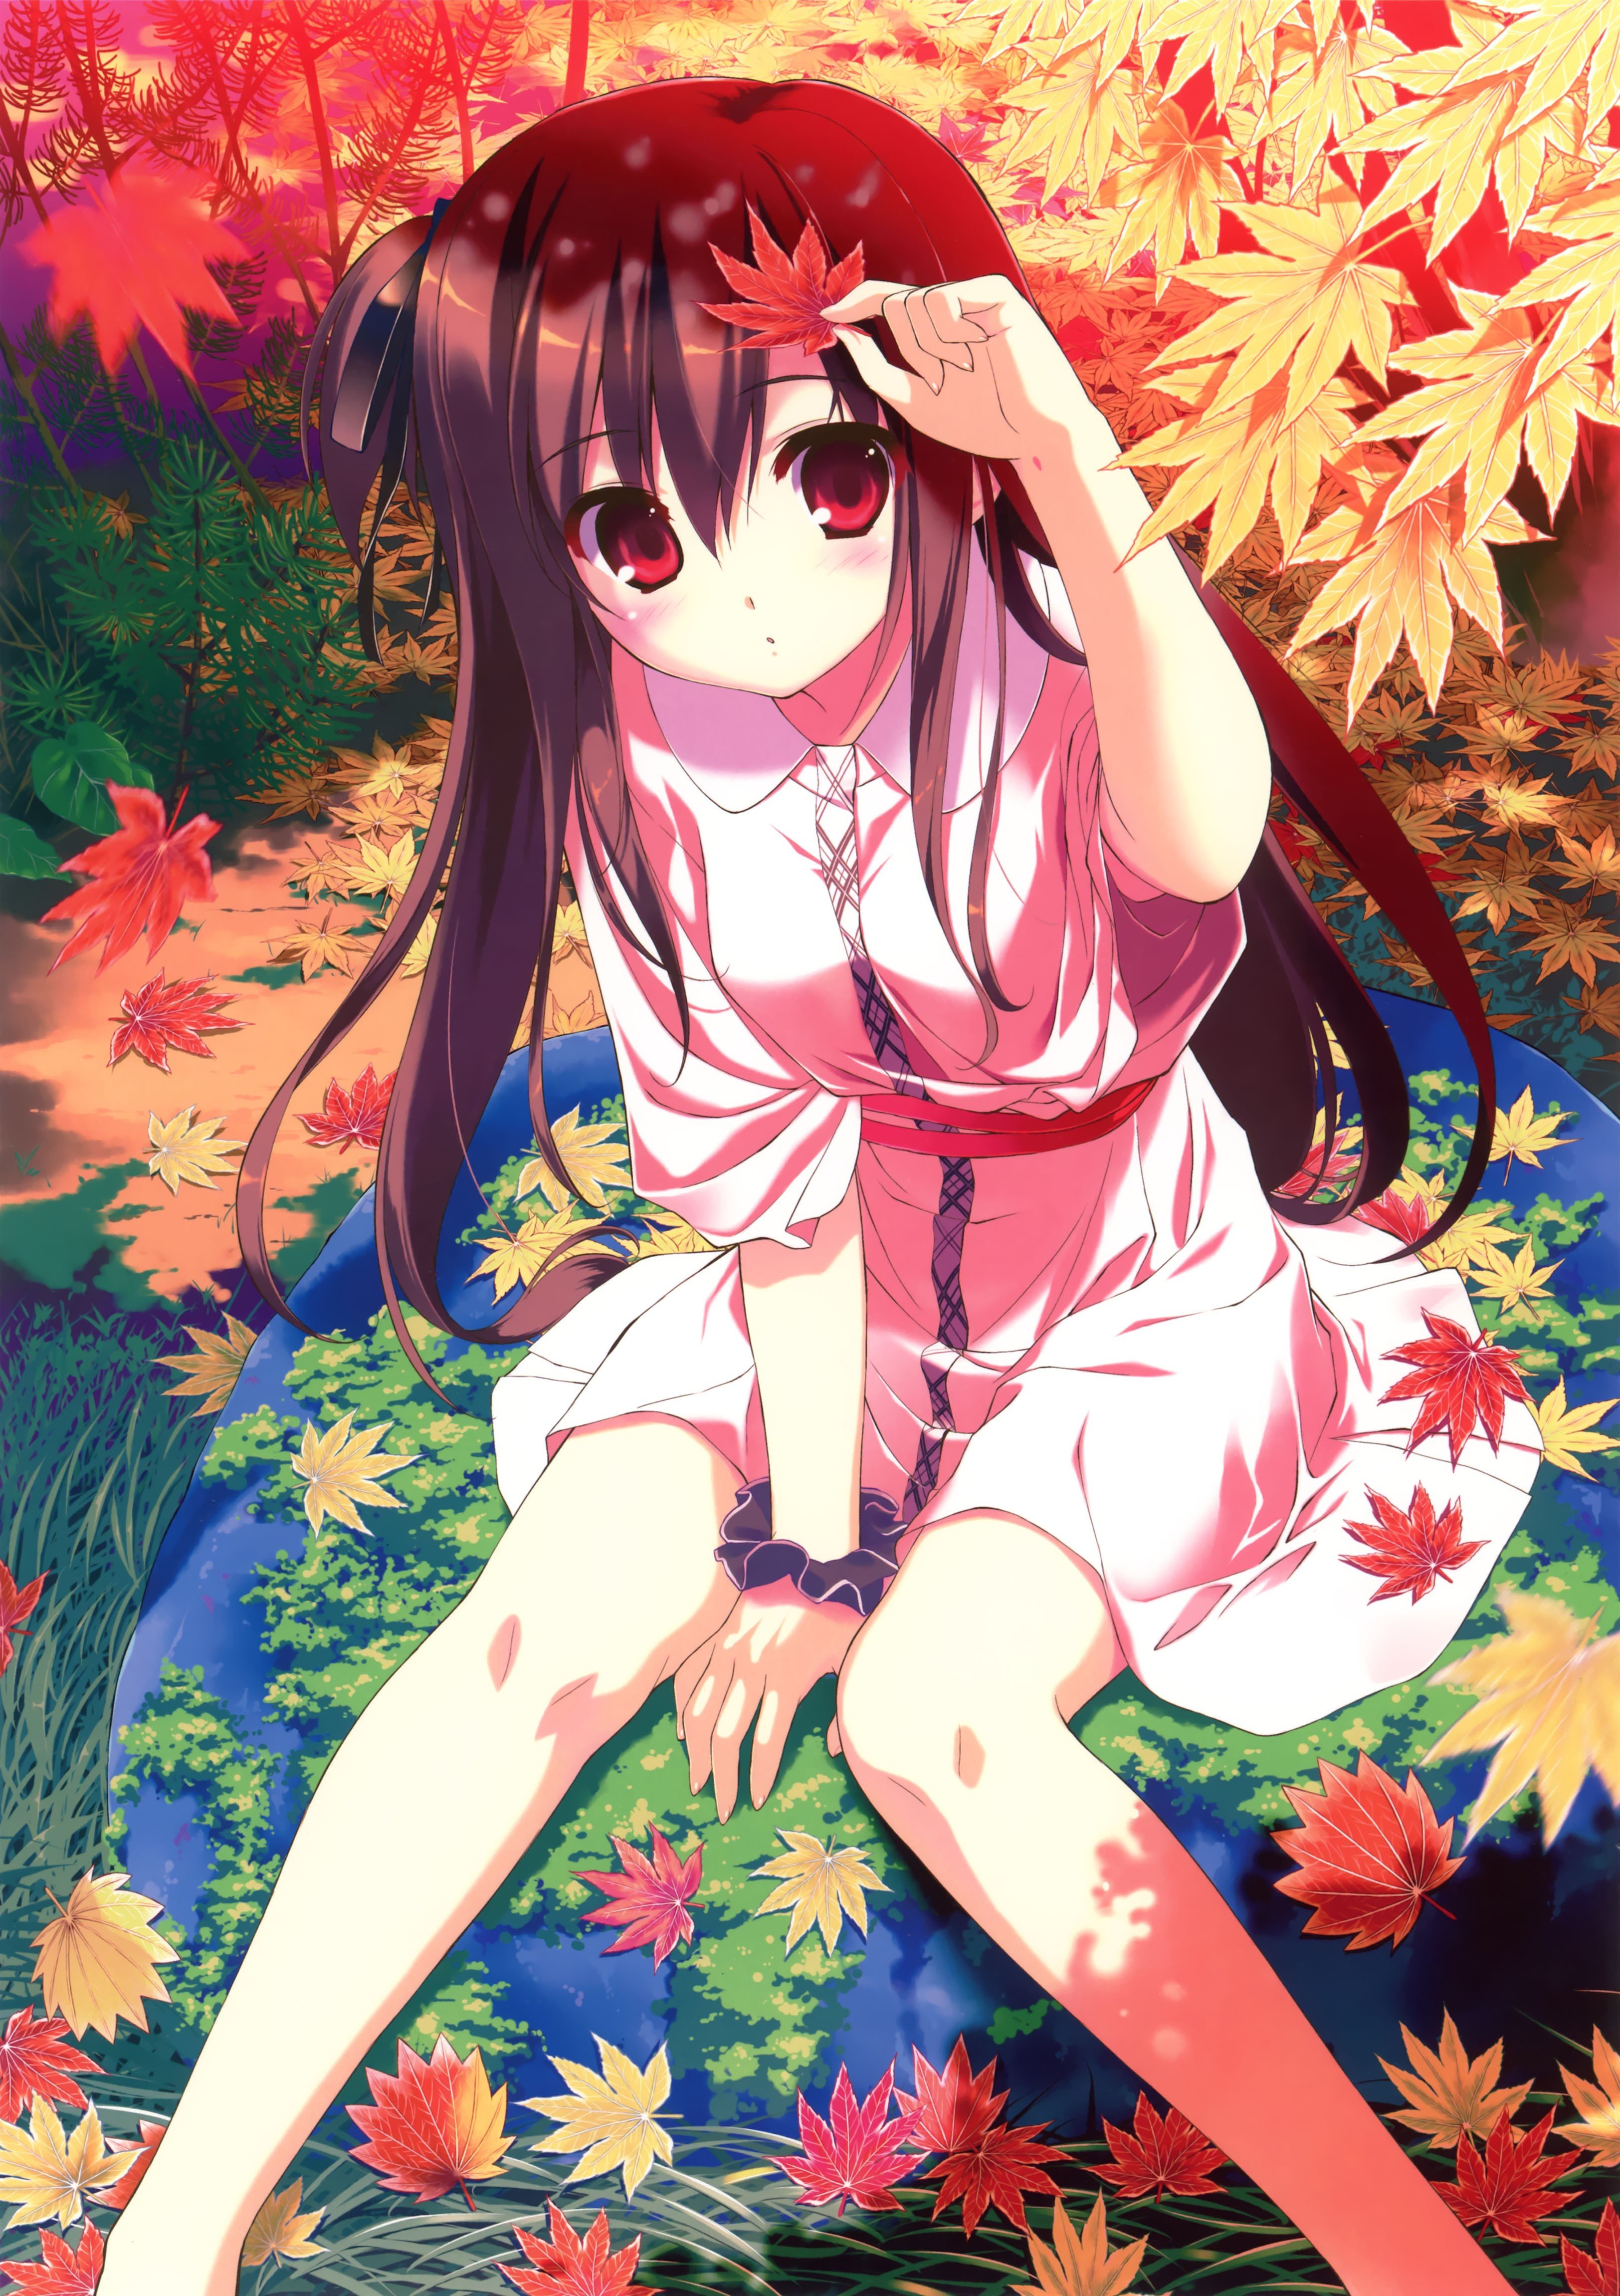 leaves, Long, Hair, Red, Eyes, Yukata, Anime, Girls, Autumn, Leaves, Fumio Wallpaper